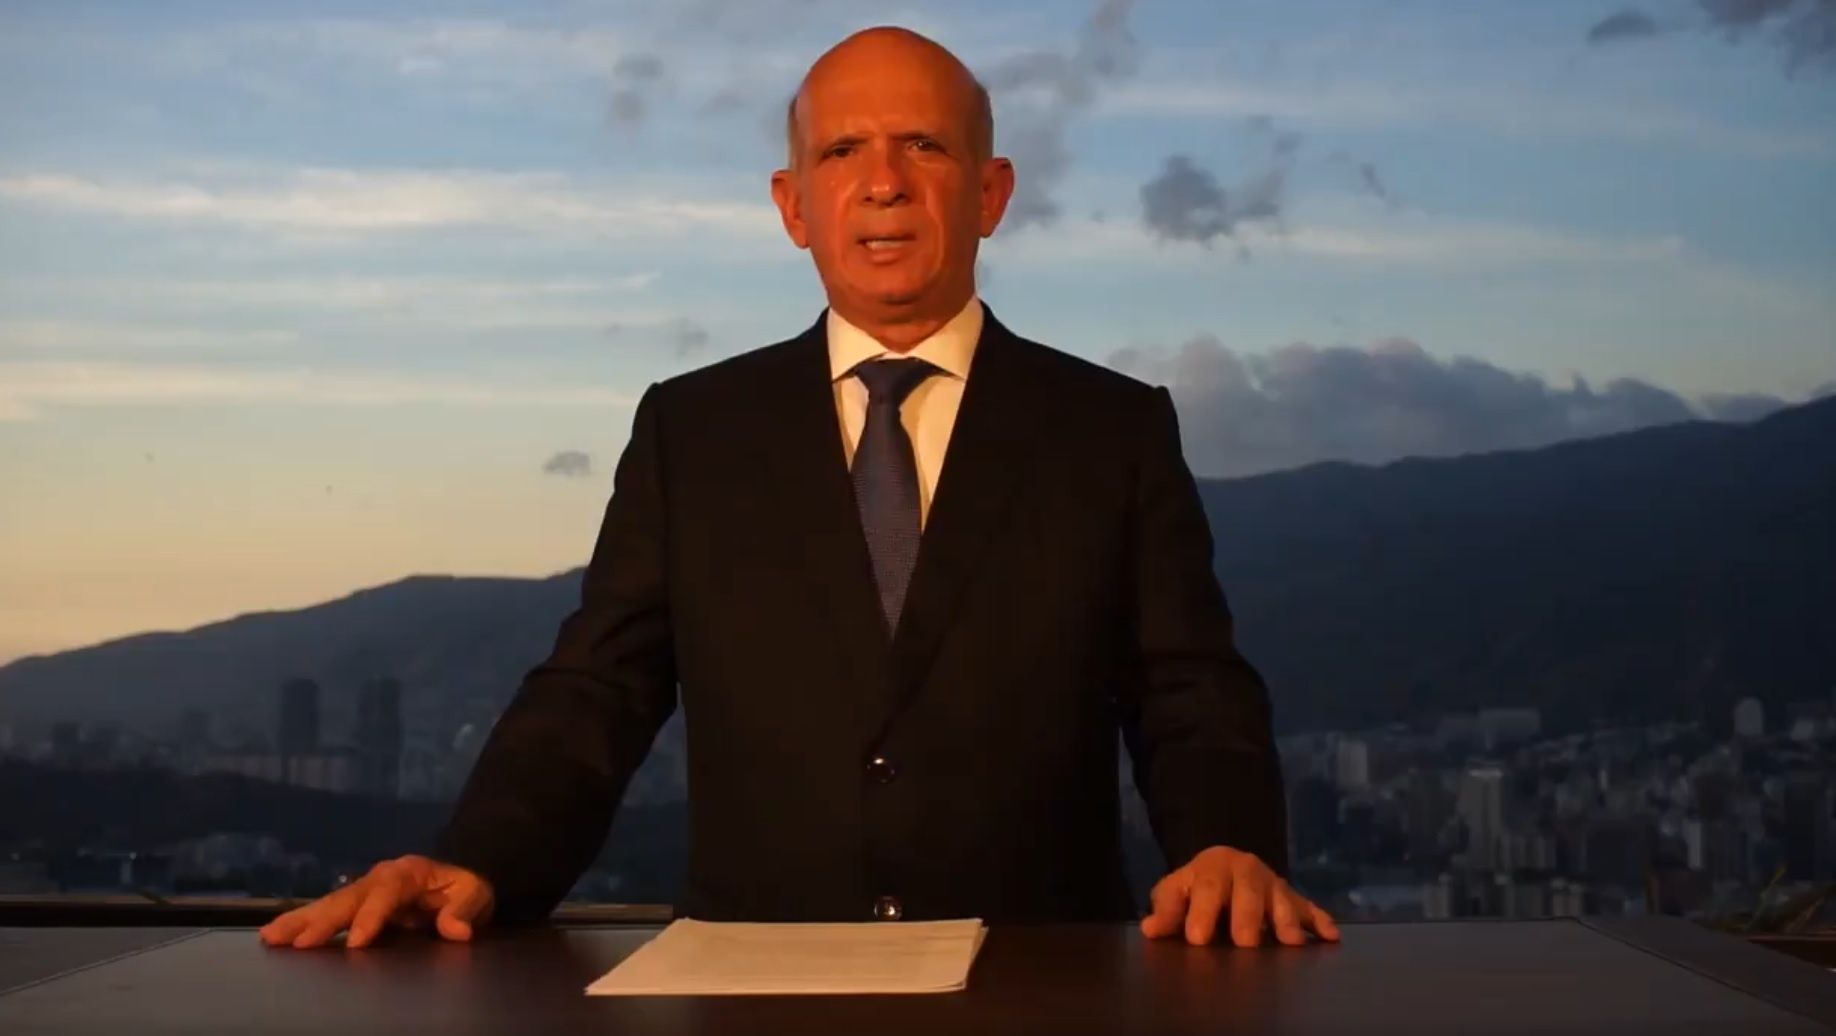 Mayor General (R) Hugo Carvajal reconoce a Guaidó y llama a permitir paso de Ayuda Humanitaria